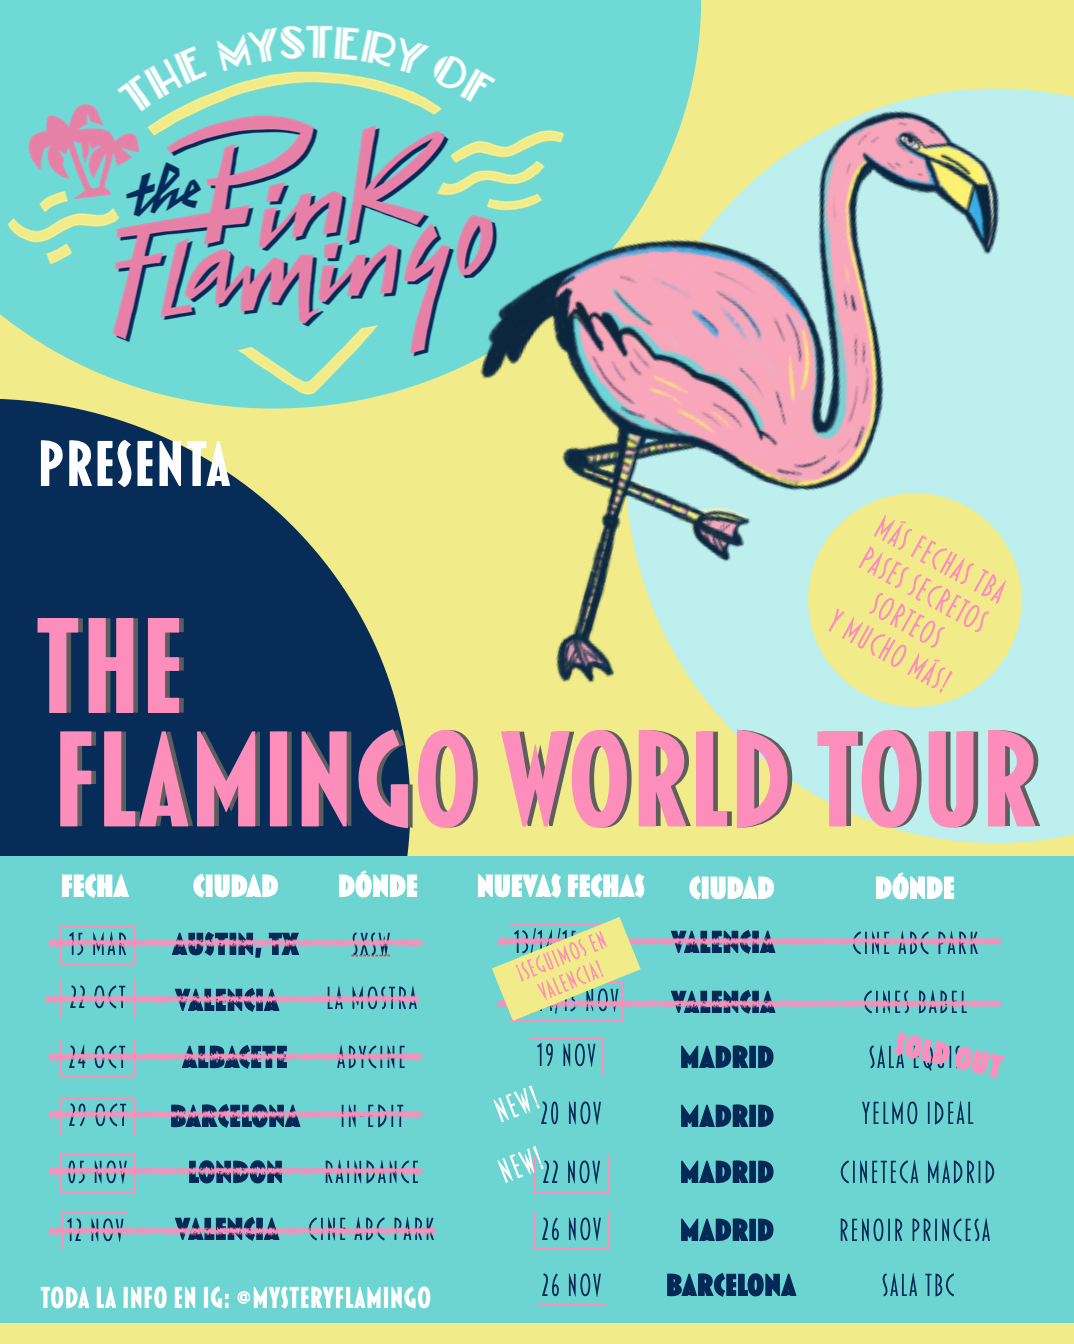 Empieza THE FLAMINGO WORLD TOUR